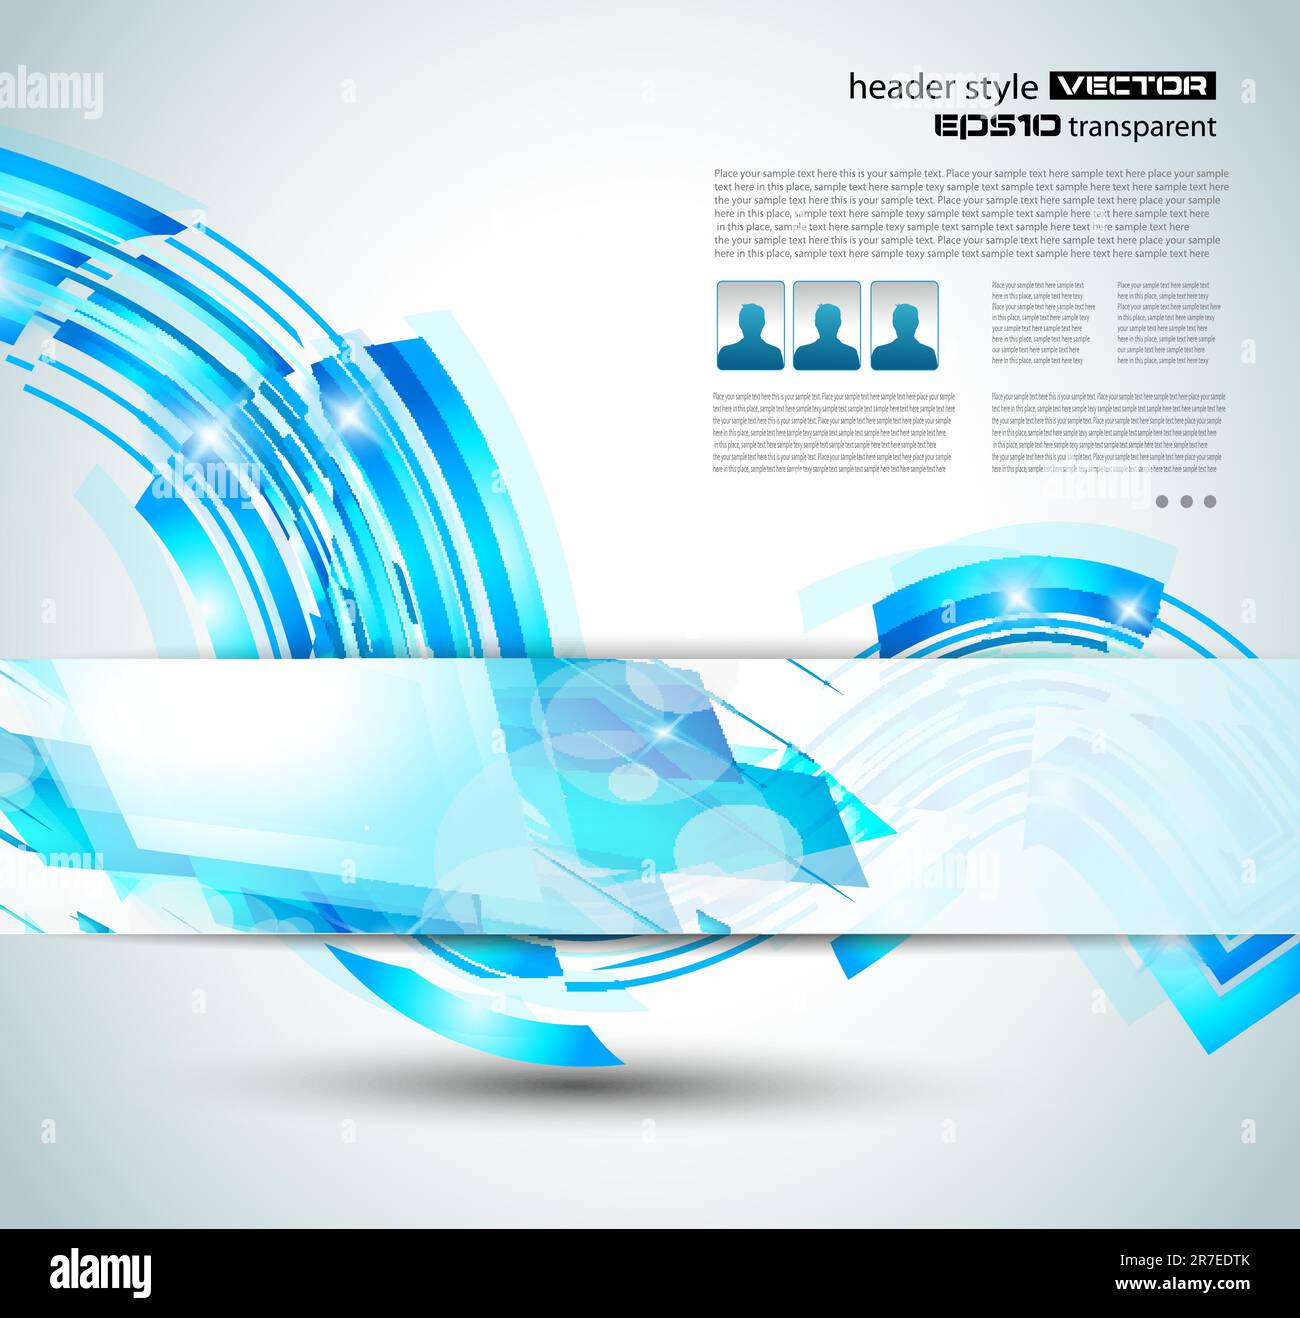 Delikat blauer abstrakter Hintergrund für stilvolle Business-Flyer, Firmenplakate oder Website-Header. Stock Vektor